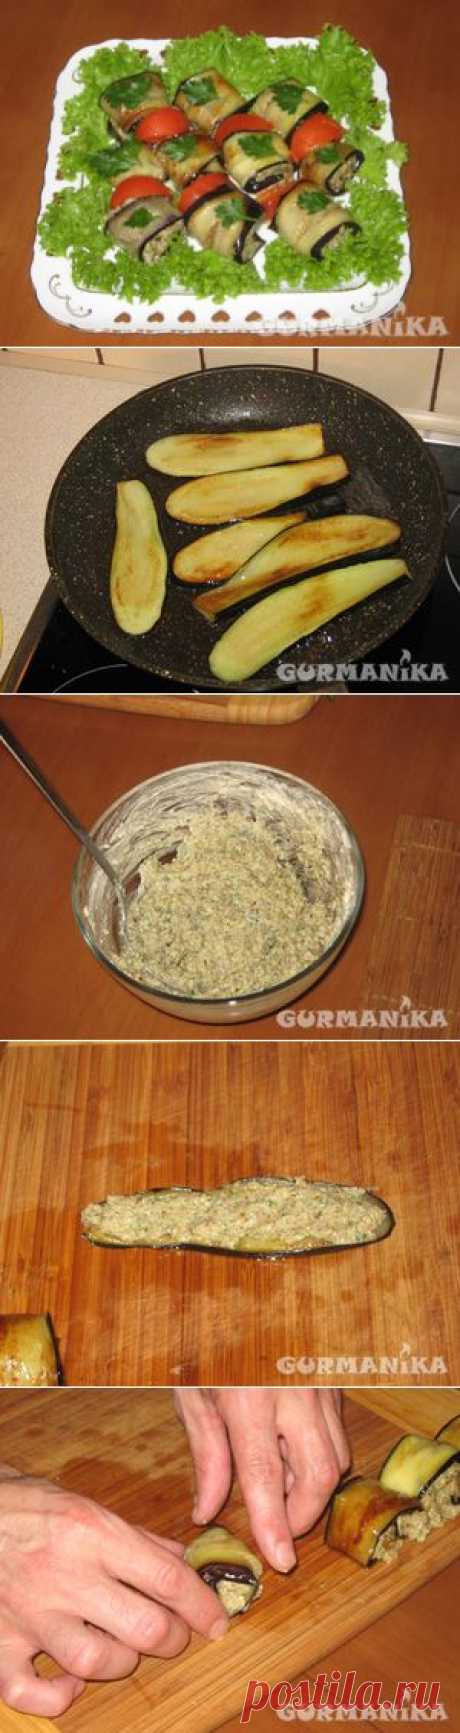 Баклажаны с ореховой начинкой - рецепт приготовления с фото